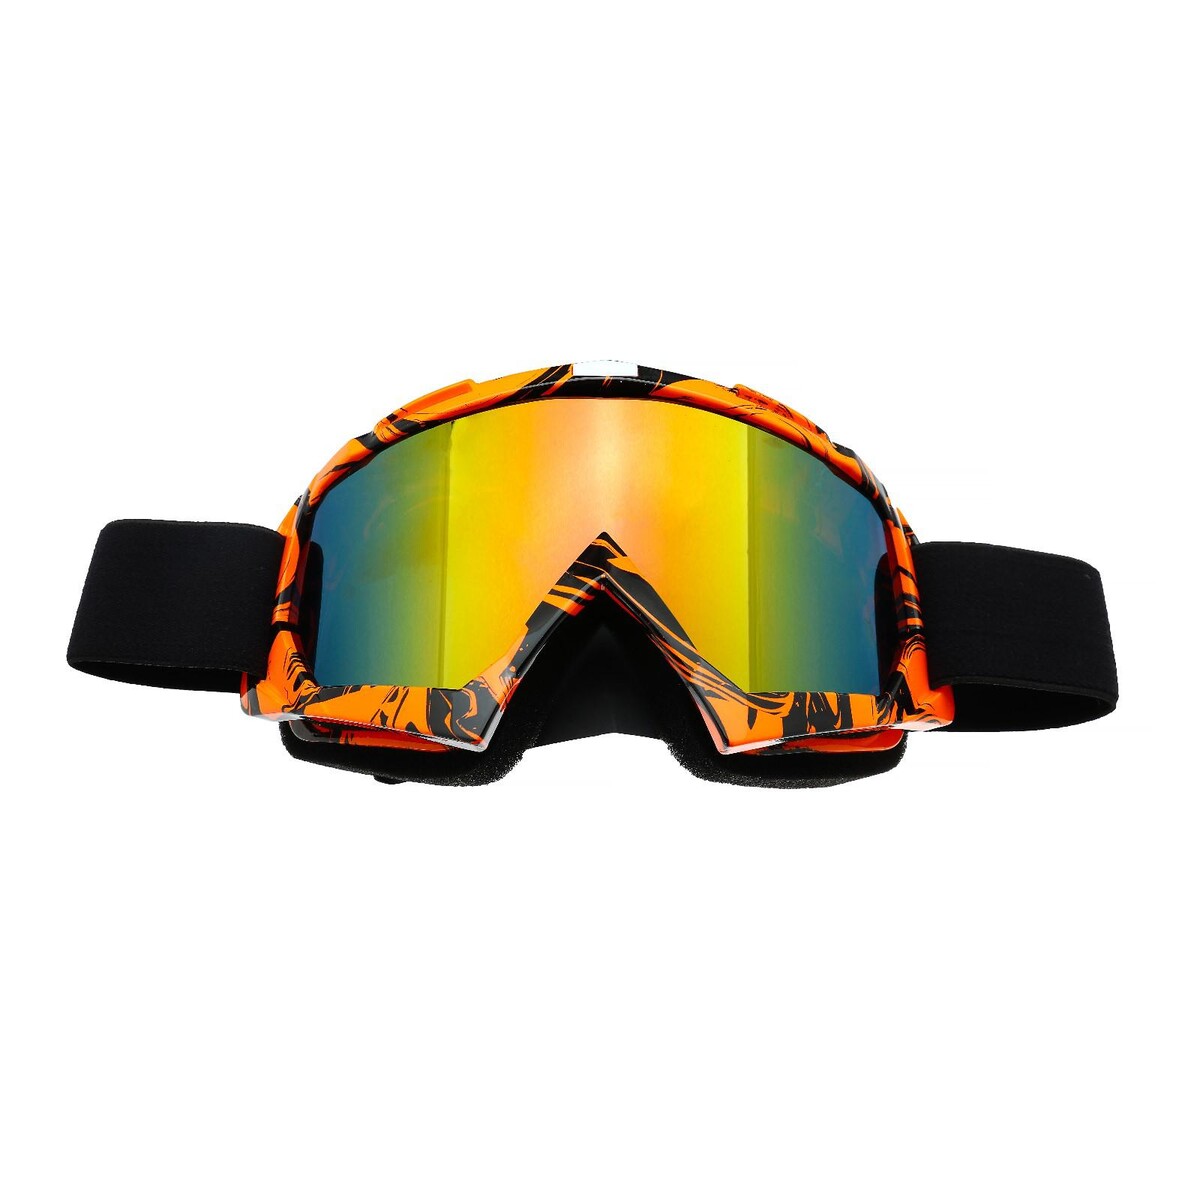 Очки-маска для езды на мототехнике, стекло синий-хамелеон, цвет оранжевый-черный, ом-7 очки маска для езды на мототехнике разборные стекло оранжевый хром